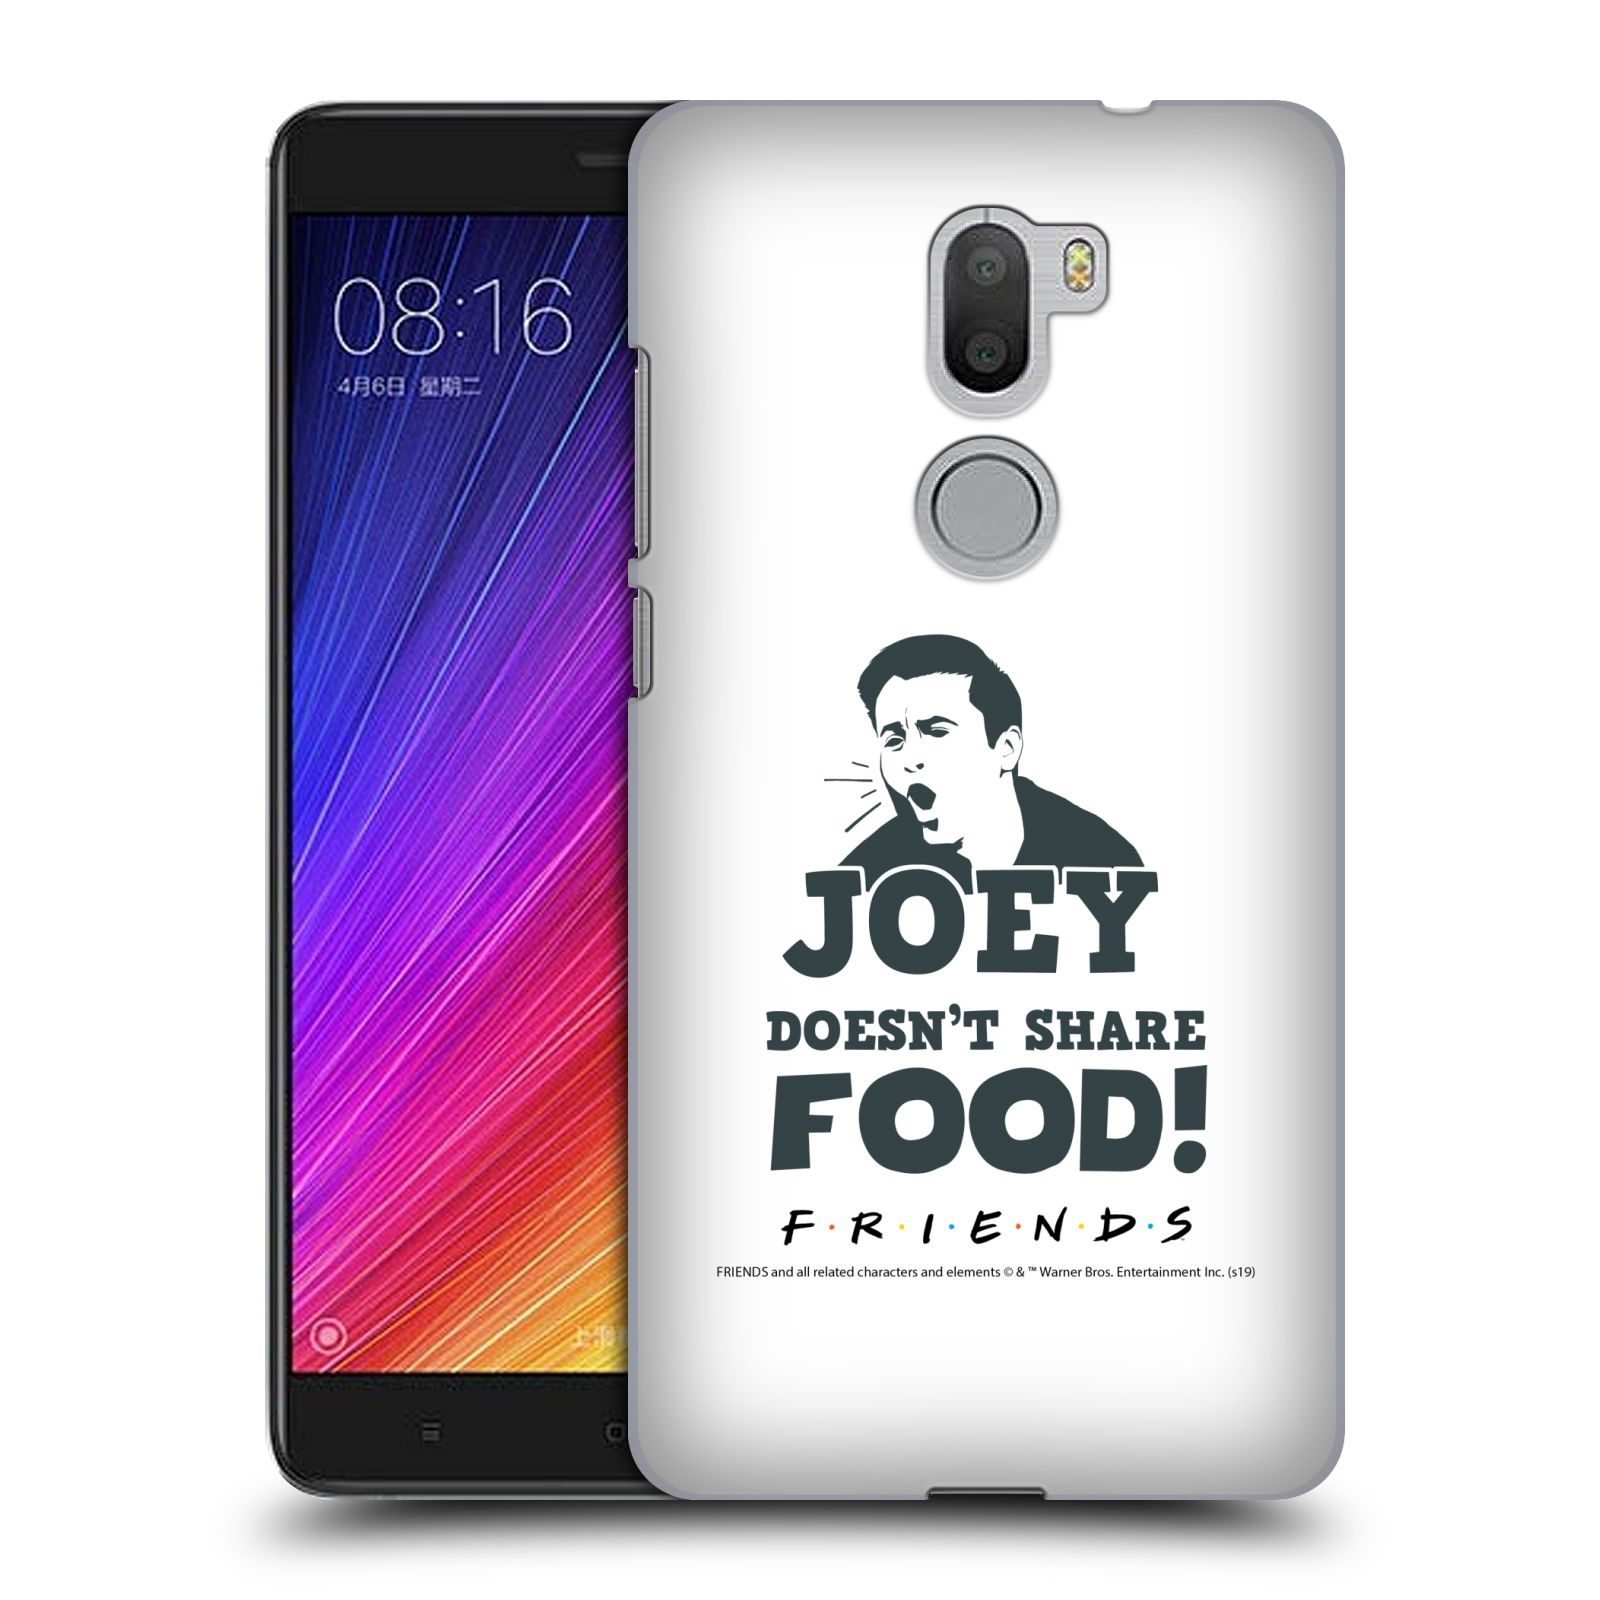 Pouzdro na mobil Xiaomi Mi5s PLUS - HEAD CASE - Seriál Přátelé - Joey se o jídlo nedělí